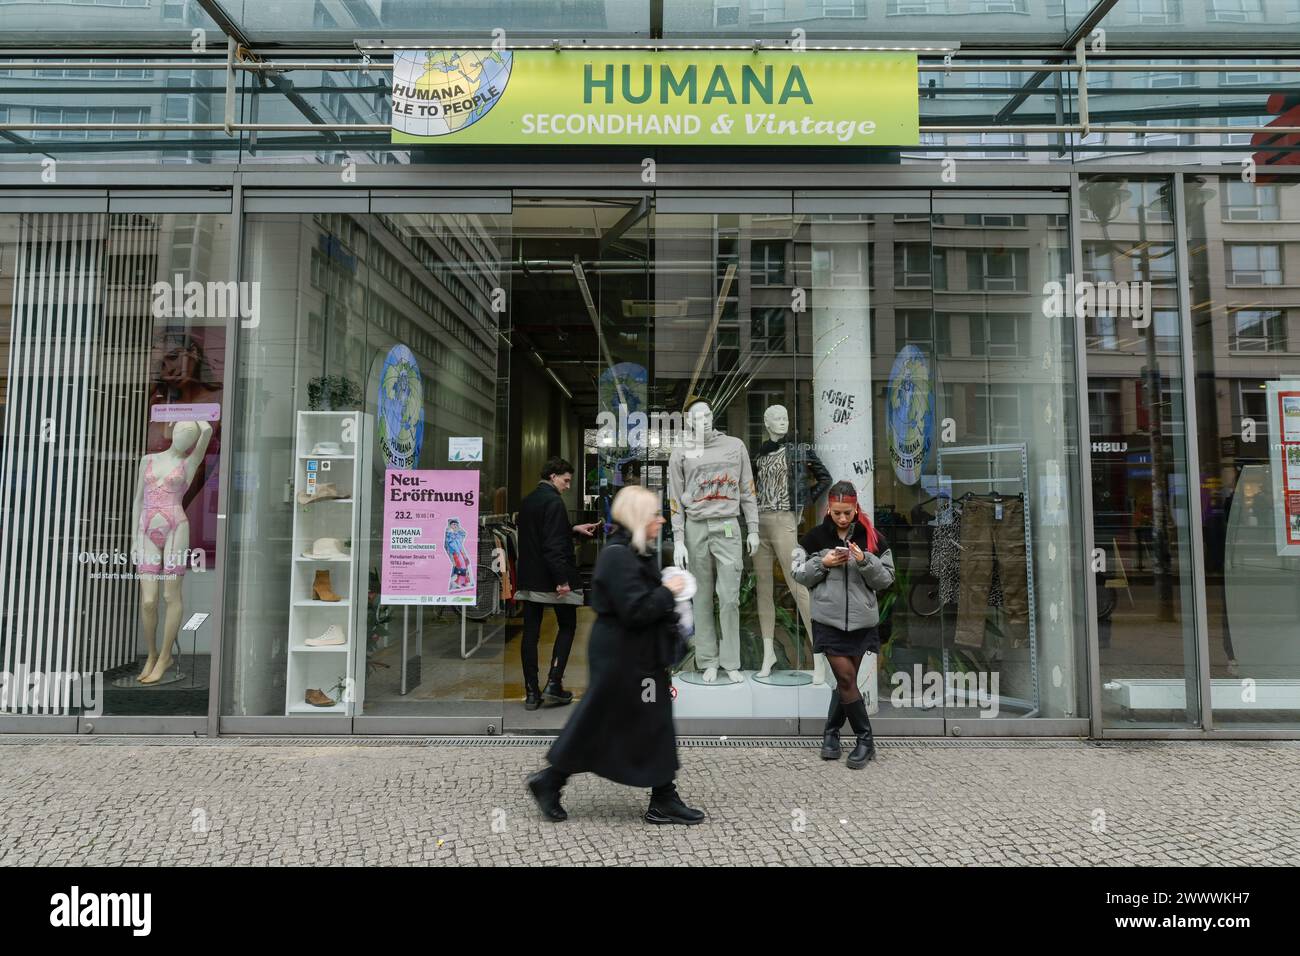 Humana Second Hand und Vintage, Textilien, Friedrichstraße, Mitte, Berlin, Deutschland Stockfoto